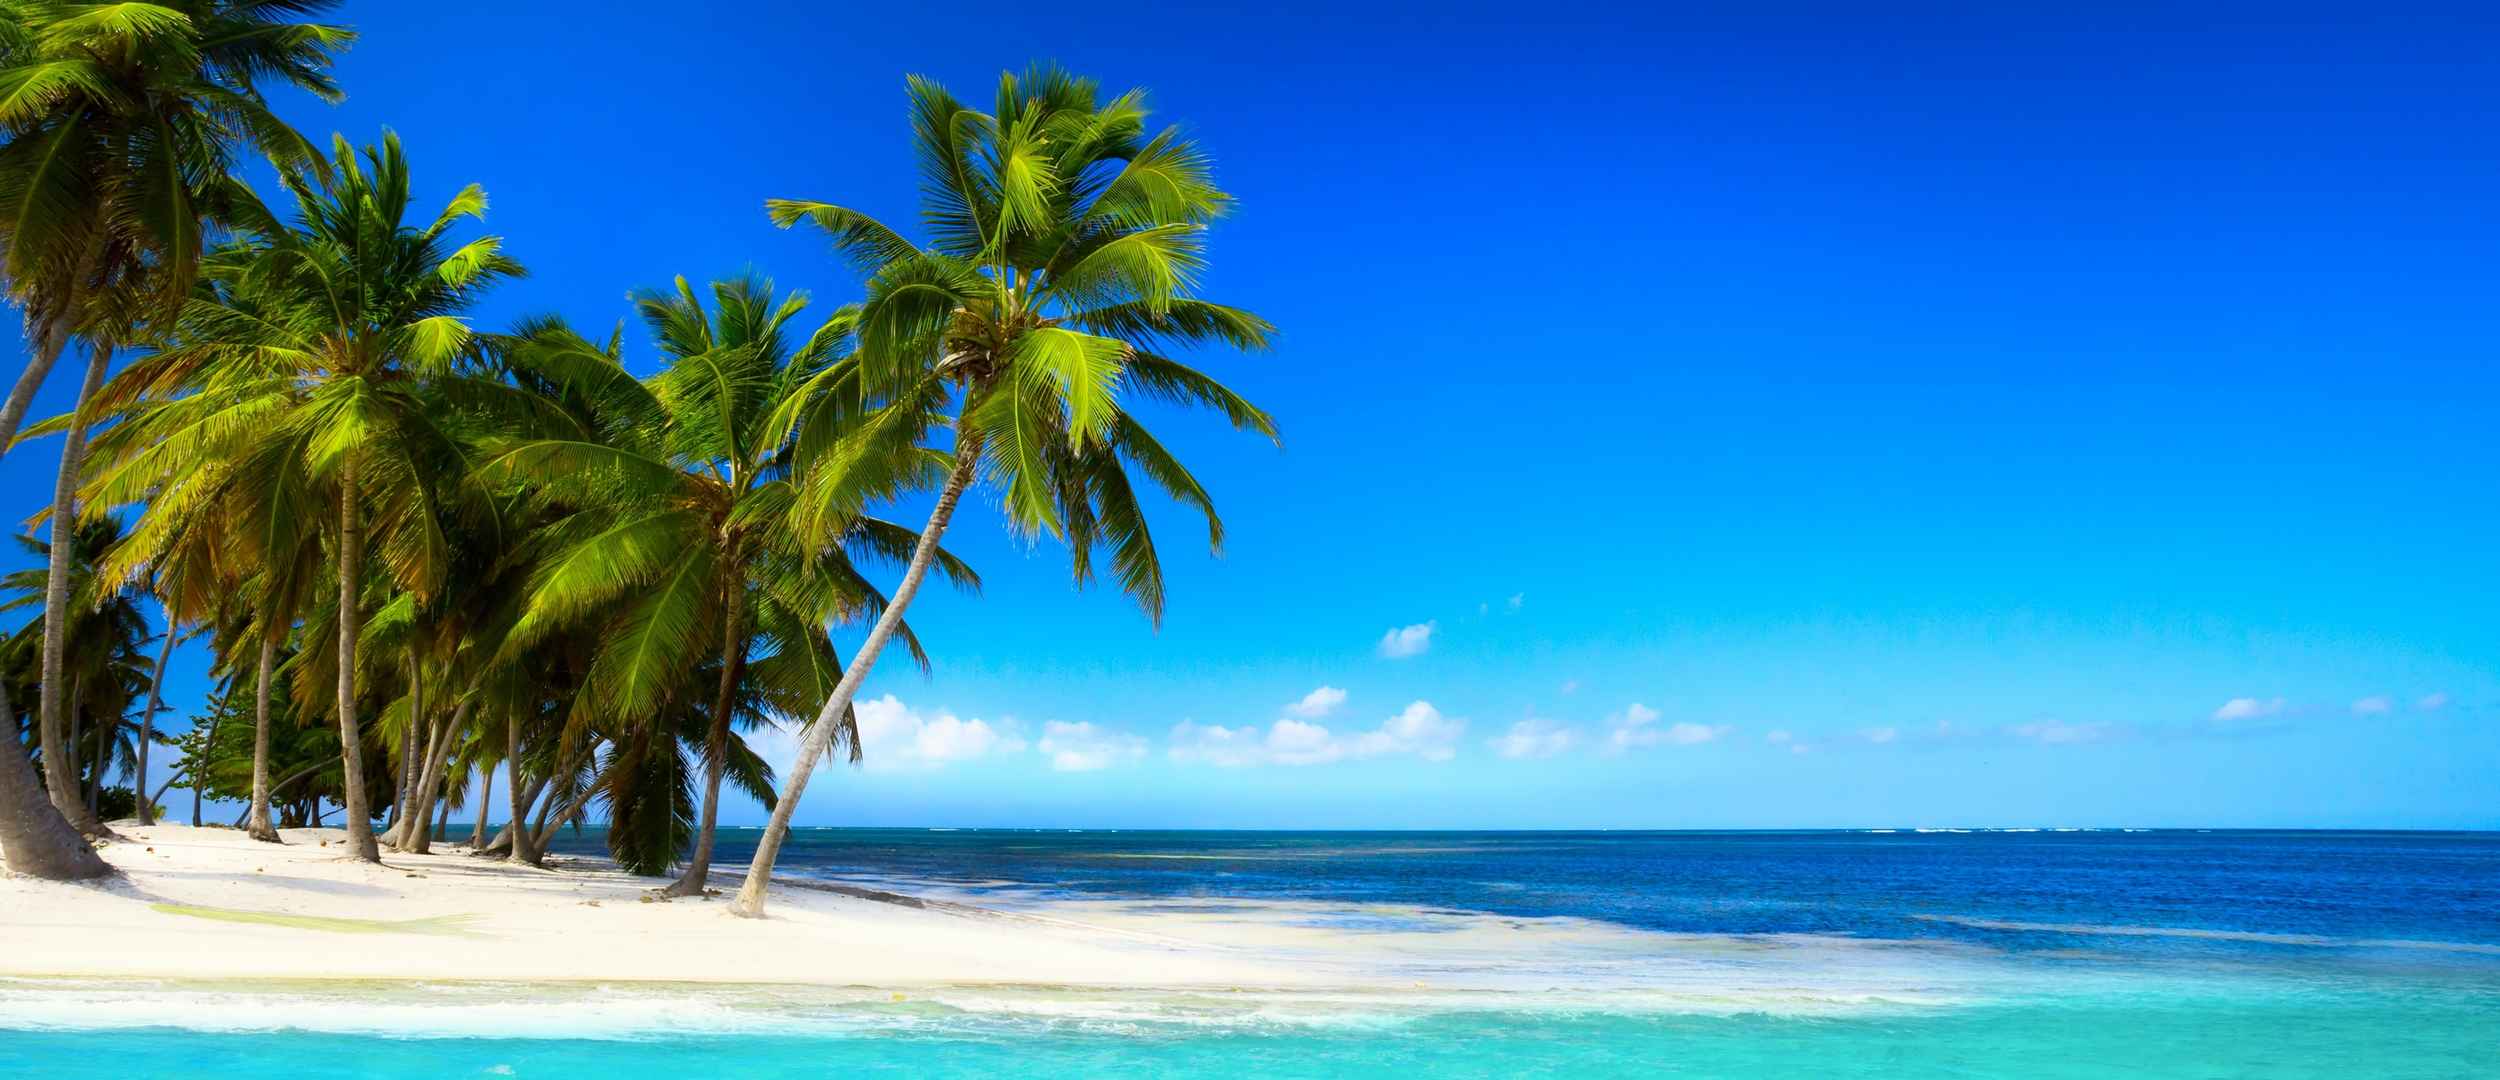 蓝色大海沙滩棕榈树壁纸图片